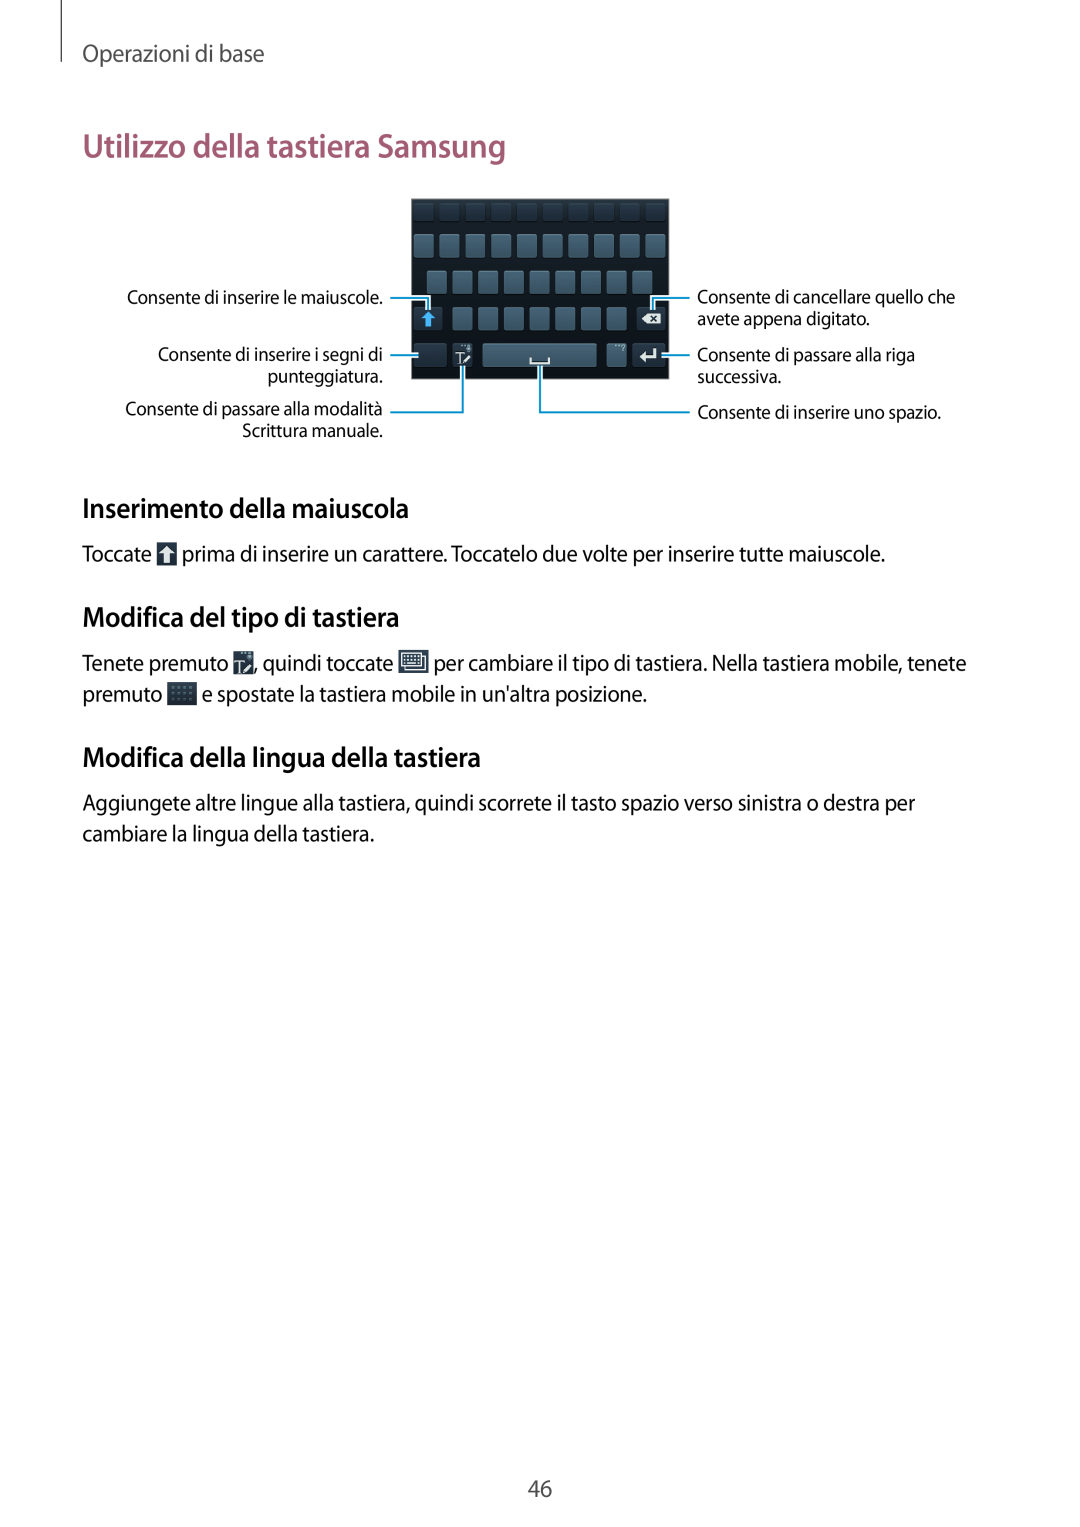 Samsung GT-N7100ZRDTUR manual Utilizzo della tastiera Samsung, Inserimento della maiuscola, Modifica del tipo di tastiera 